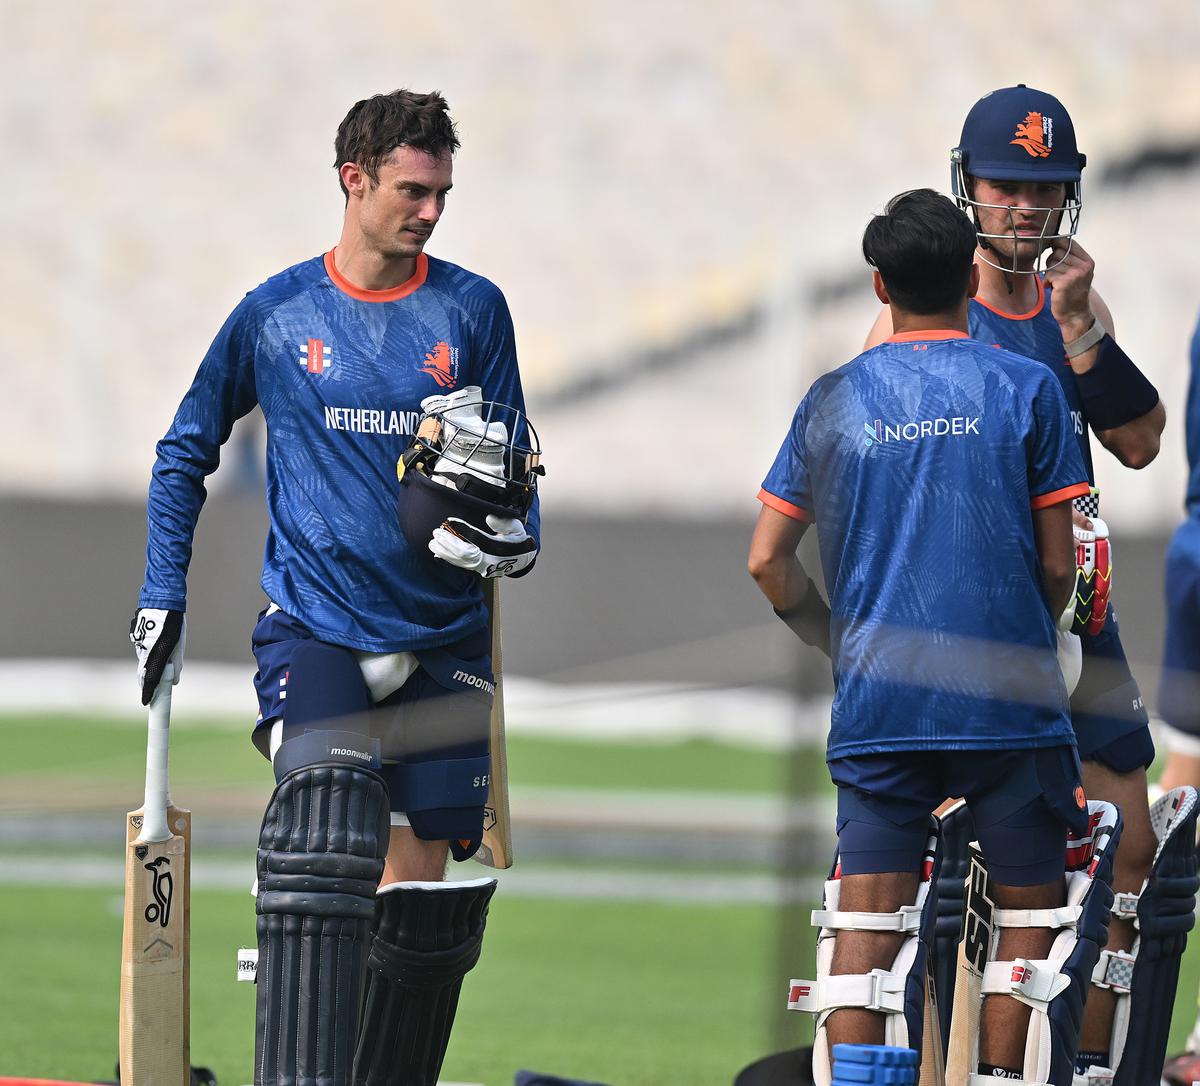 Wereldkampioenschap cricket 2023 |  De bijdragen van coach Ryan Cook aan het nationale team van Bangladesh zullen ons helpen: de Nederlandse aanvoerder Scott Edwards